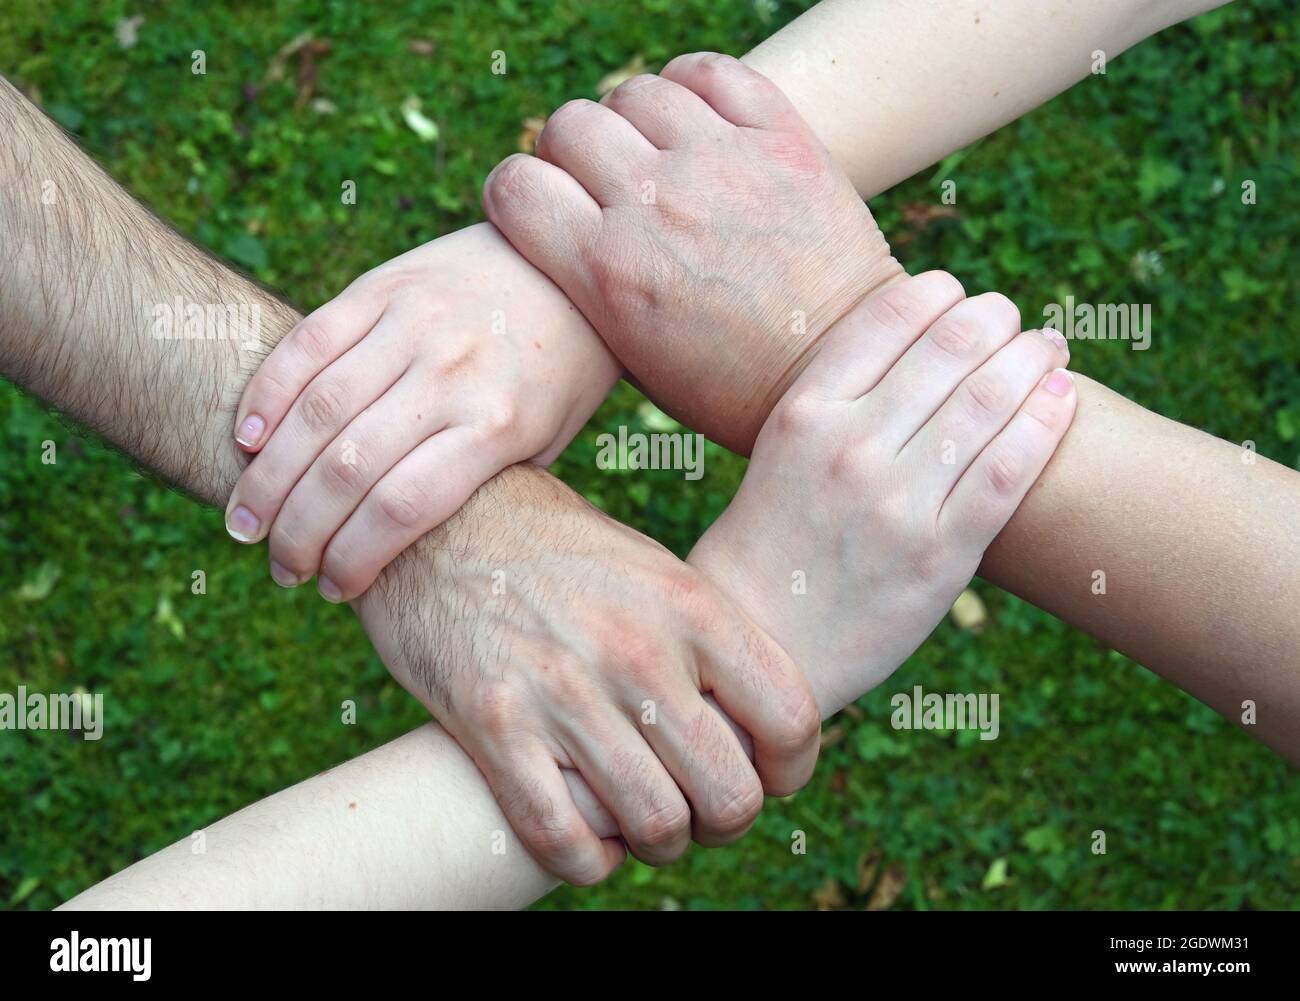 Quatre mains agrippent le poignet de la personne devant elles, formant un carré Banque D'Images